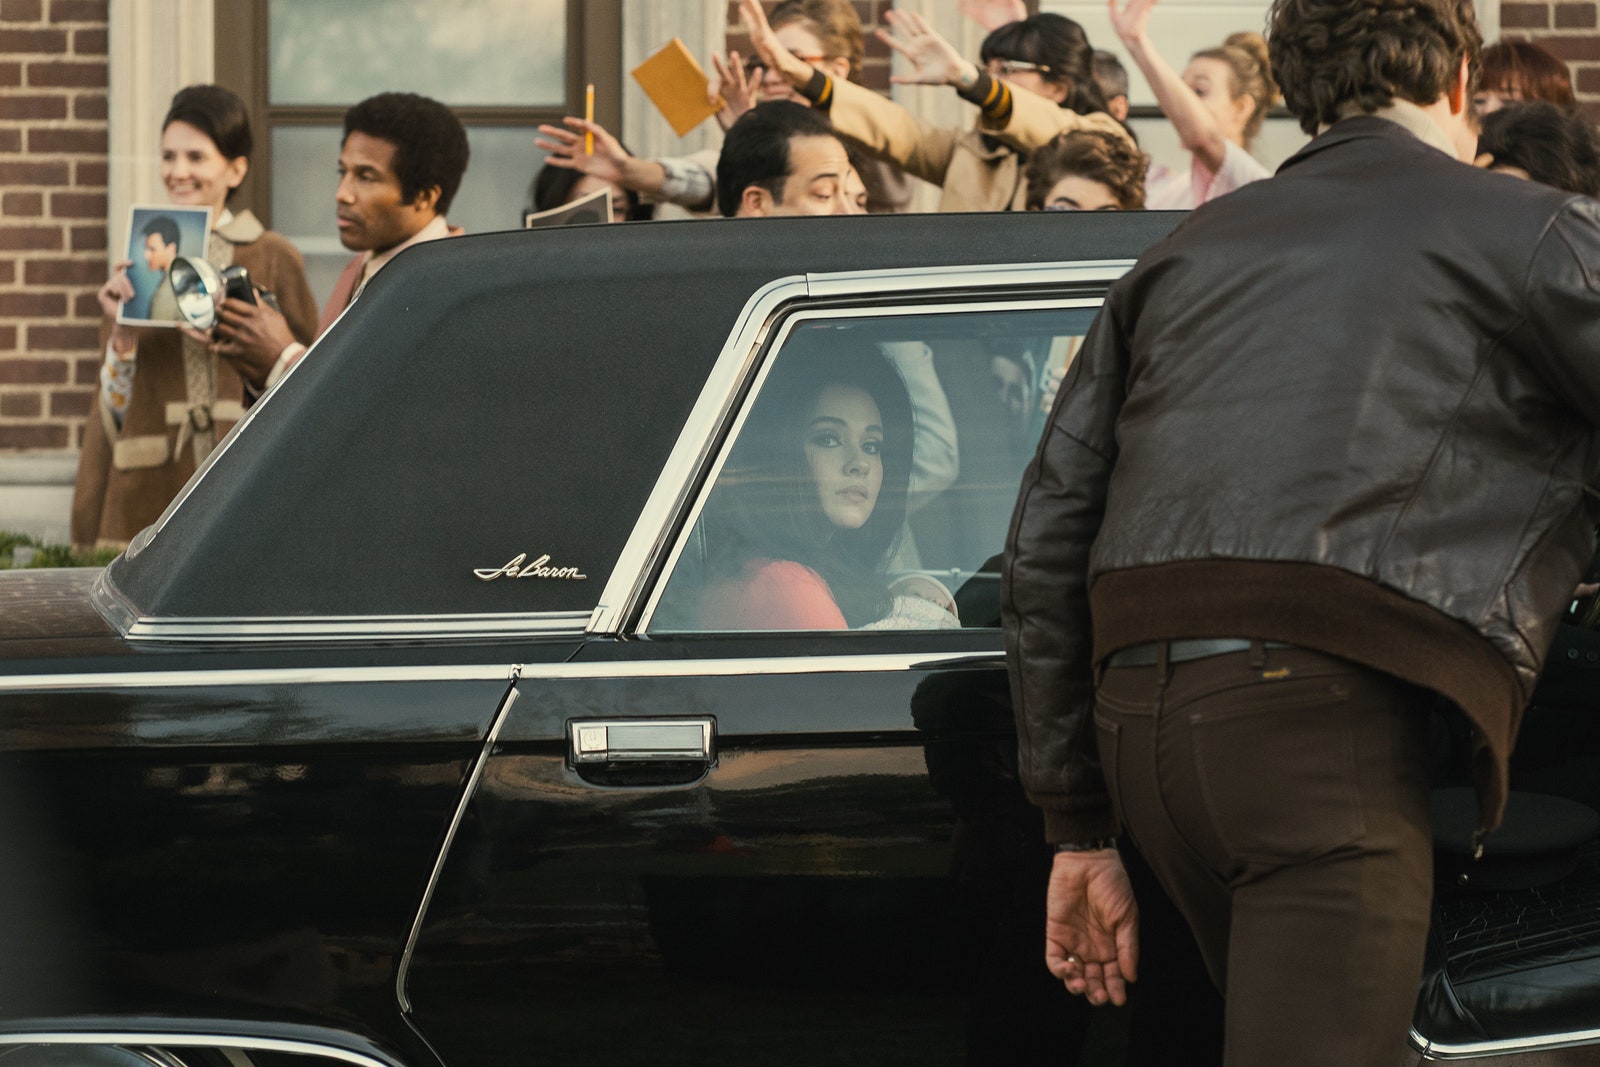 Cailee Spaeny als Priscilla Presley in Priscilla.  Sie sitzt auf der Rückbank eines Autos mit vielen Fans außerhalb des Fahrzeugs.